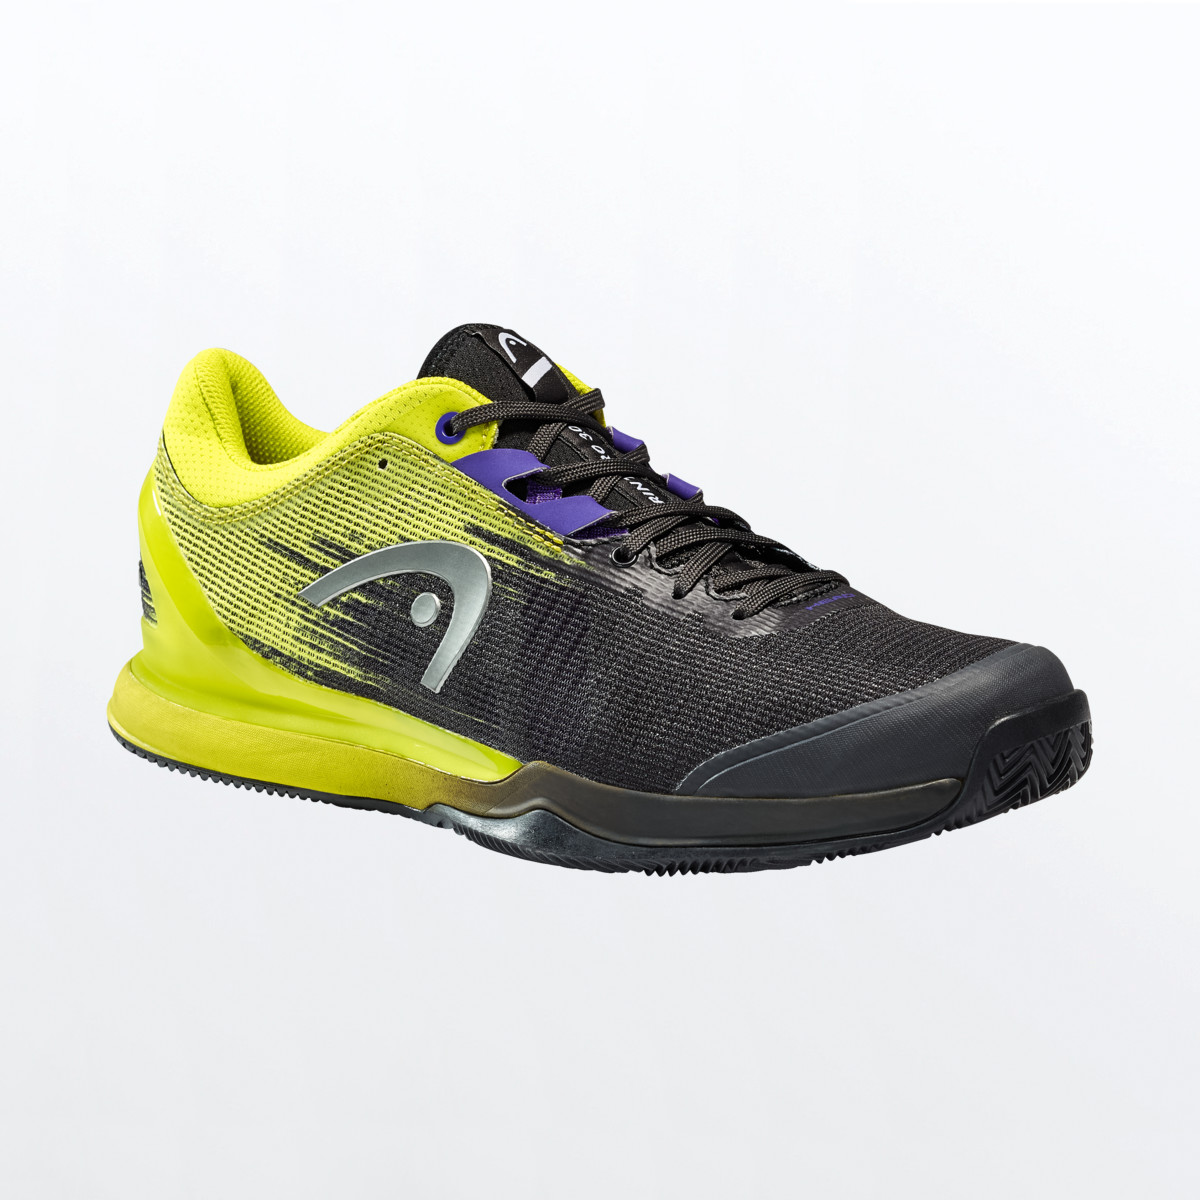 Visiter la boutique HEADHEAD Revolt Pro 3.0 Clay Men Chaussure de Tennis pour Hommes 